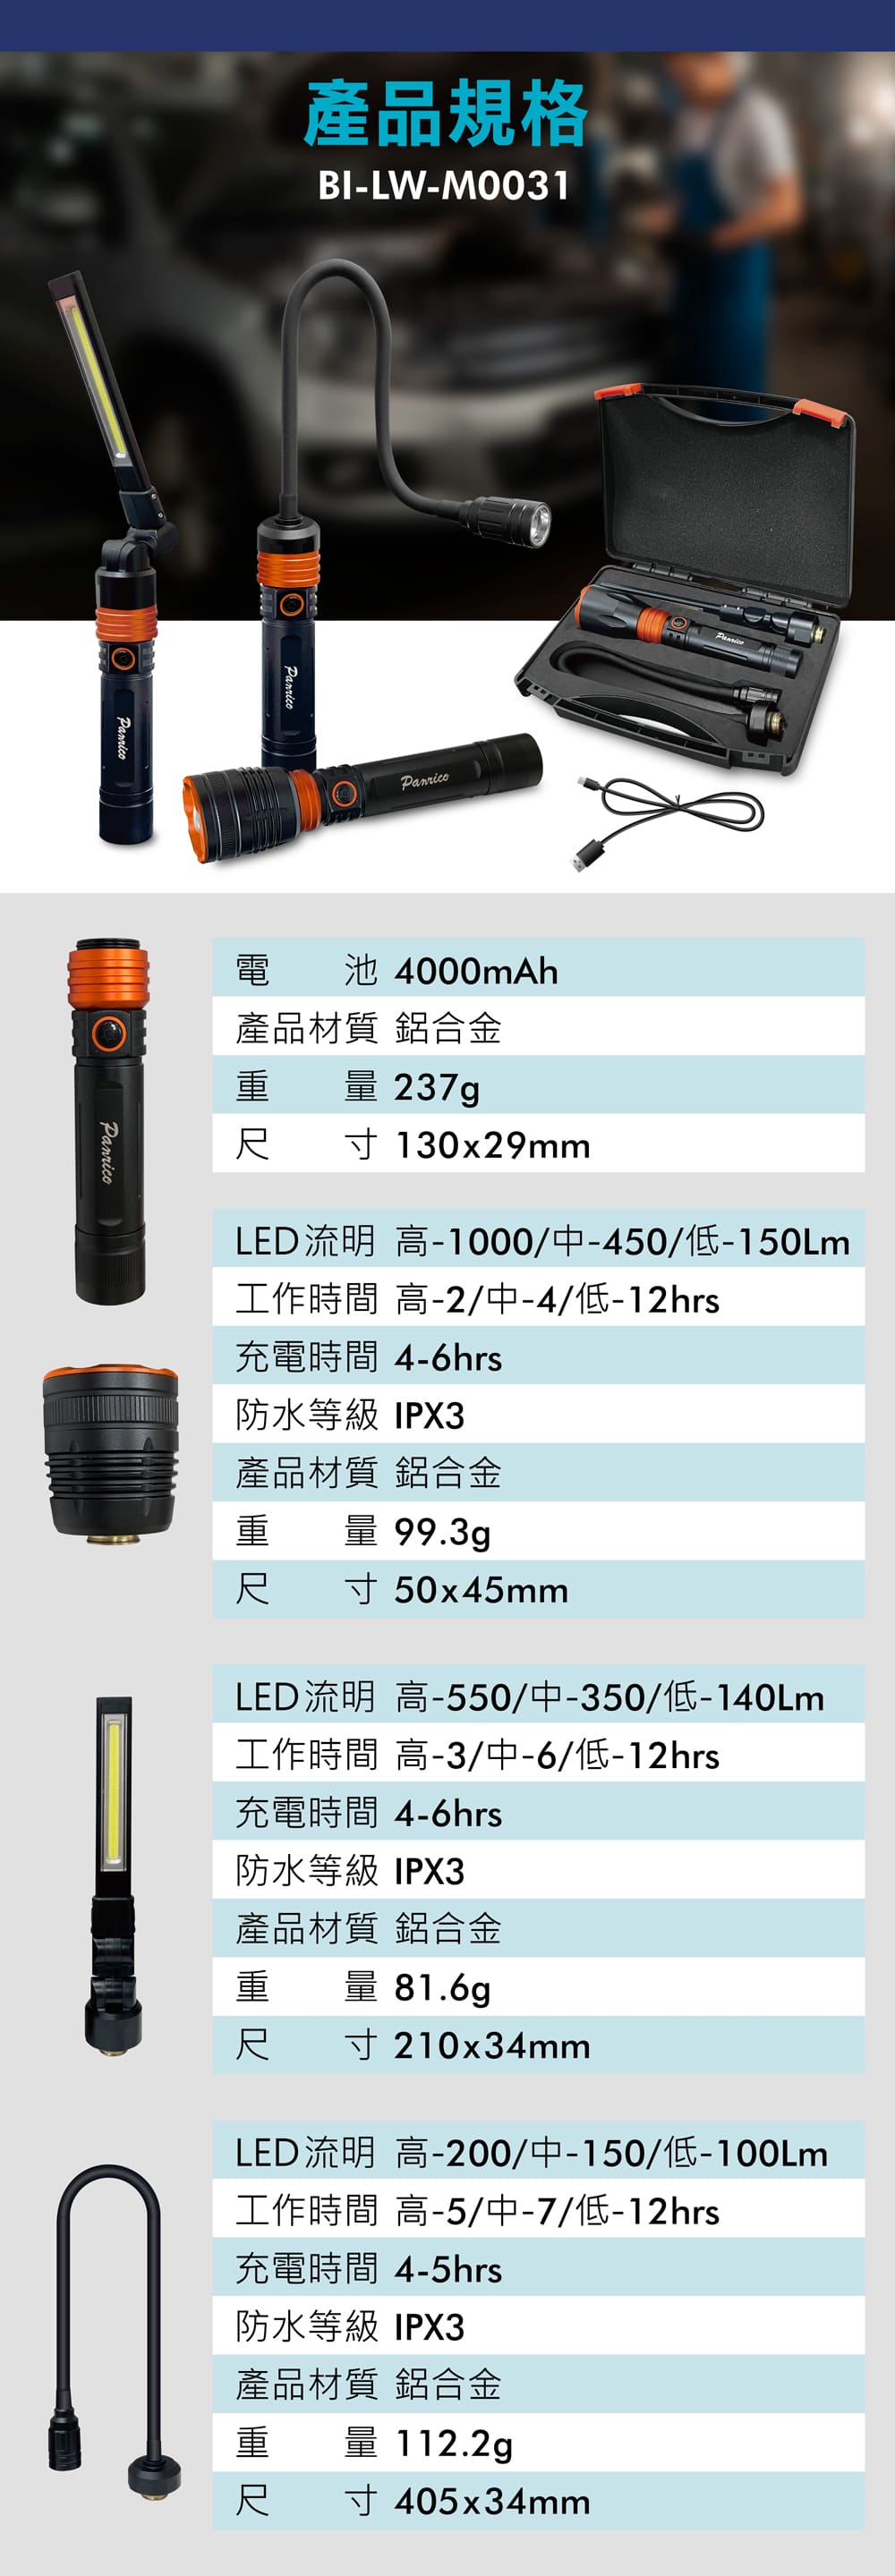 3合1 LED充電手電筒組 工作燈 蛇管燈 產品規格